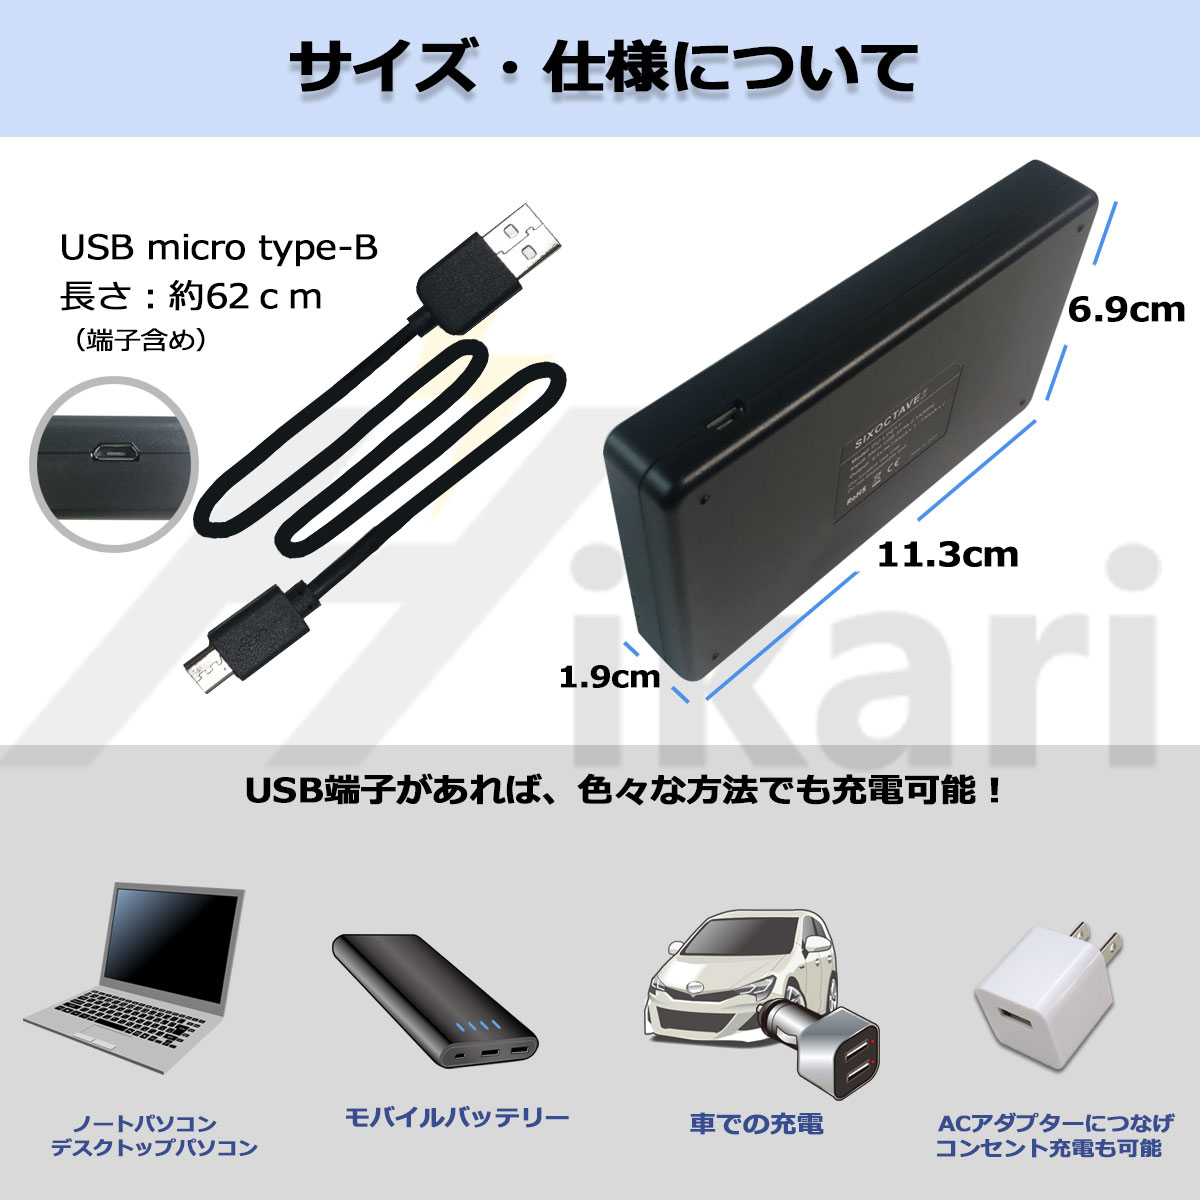 【楽天市場】【2個同時充電可能】ソニー NP-BX1 デュアル 互換USBチャージャー 1点 (メーカー純正互換電池共に対応) サイバー